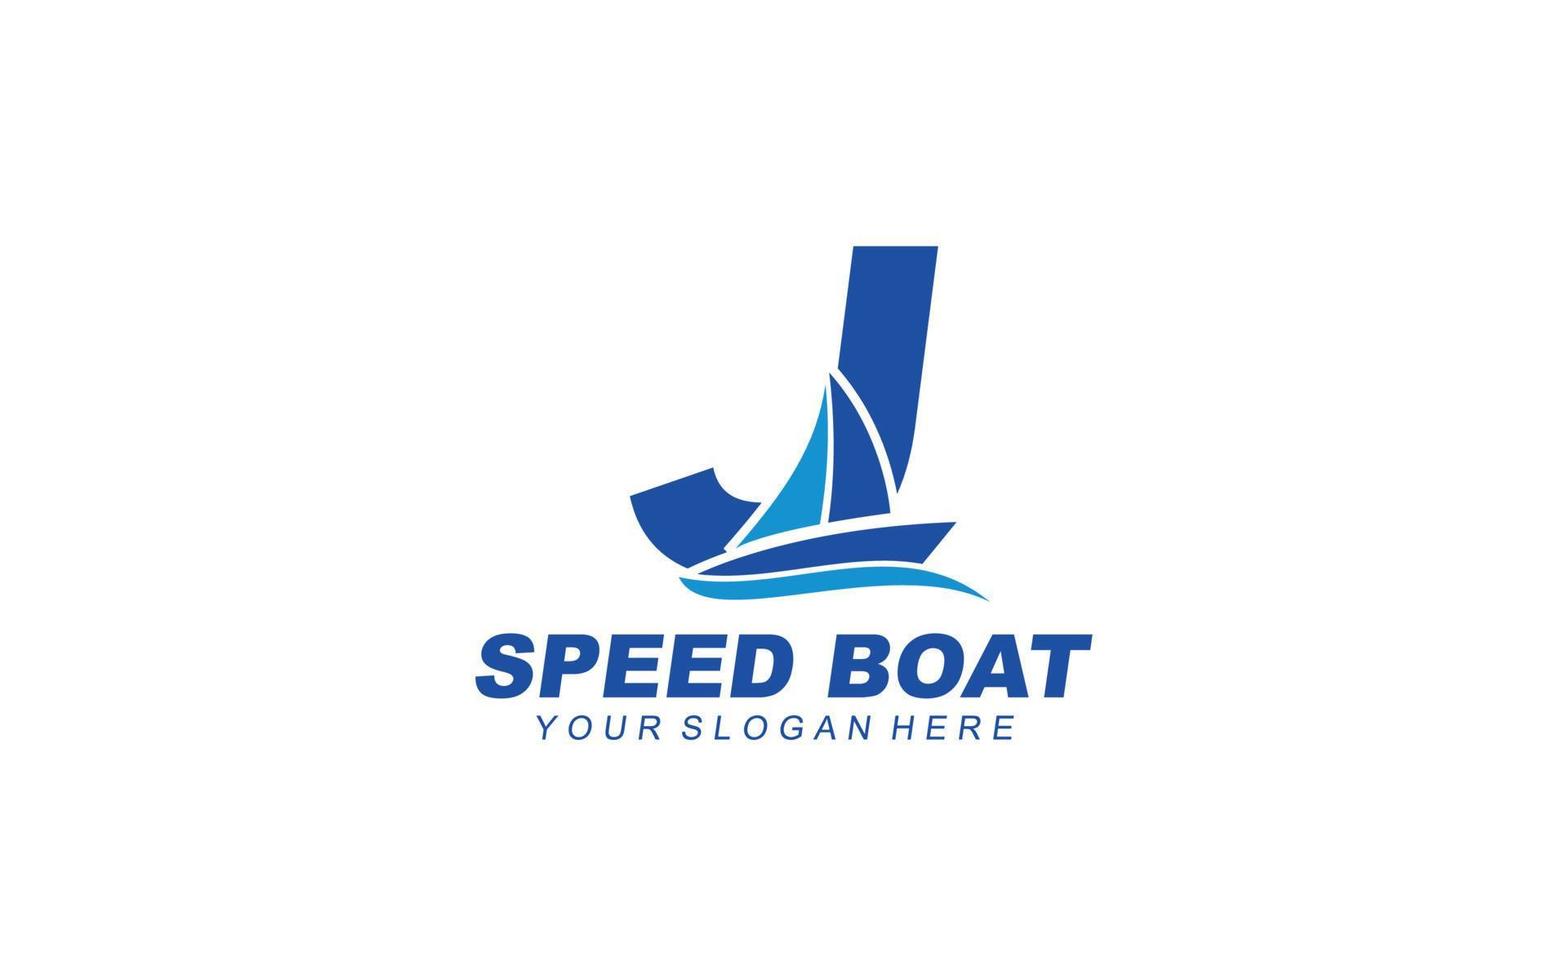 j barca logo design ispirazione. vettore lettera modello design per marca.